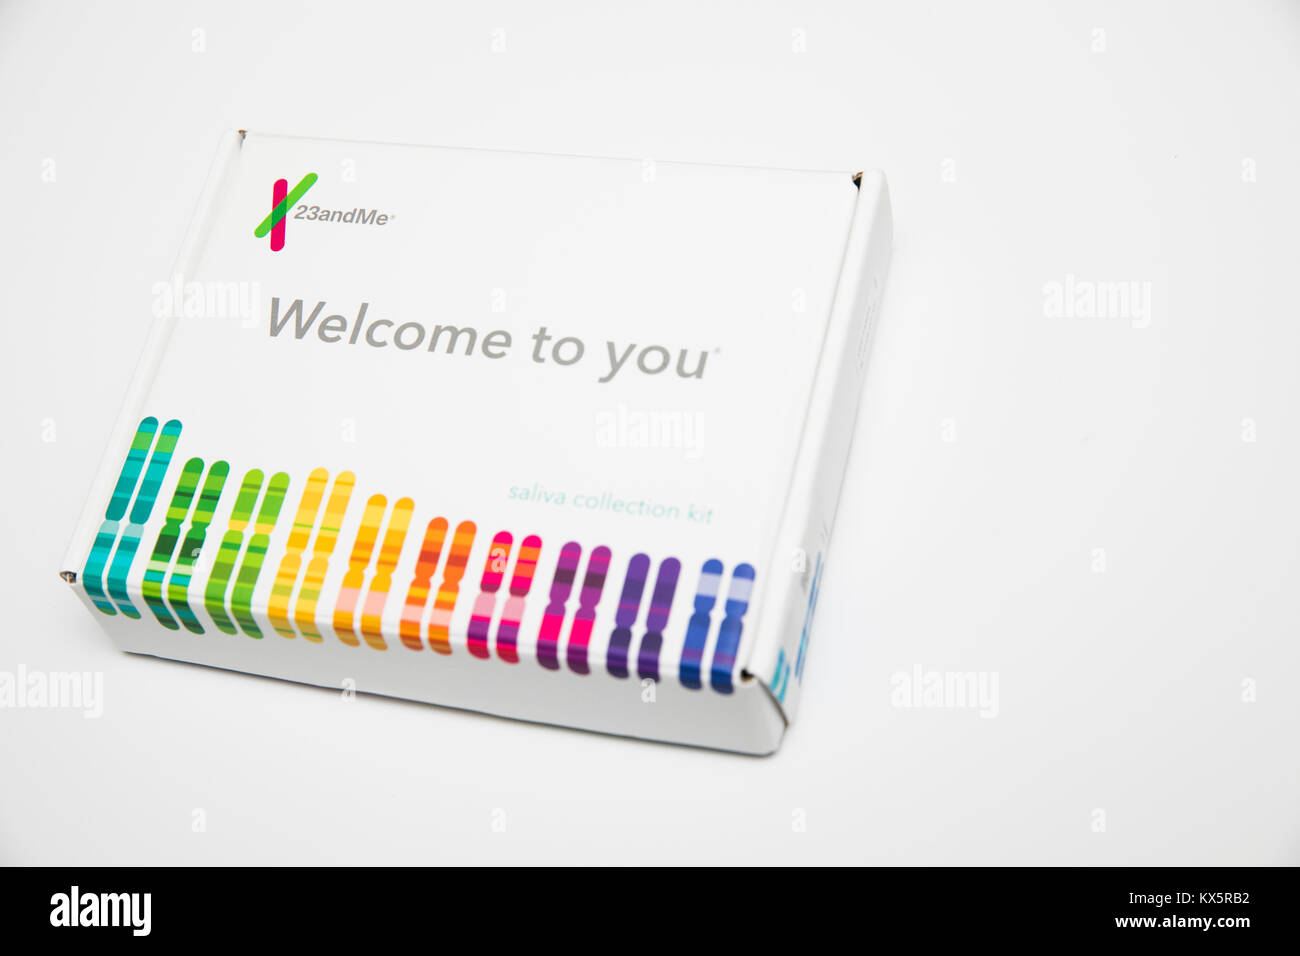 Il contenuto di una 23andMe test genetici kit come si vede il 3 gennaio 2018. Foto Stock